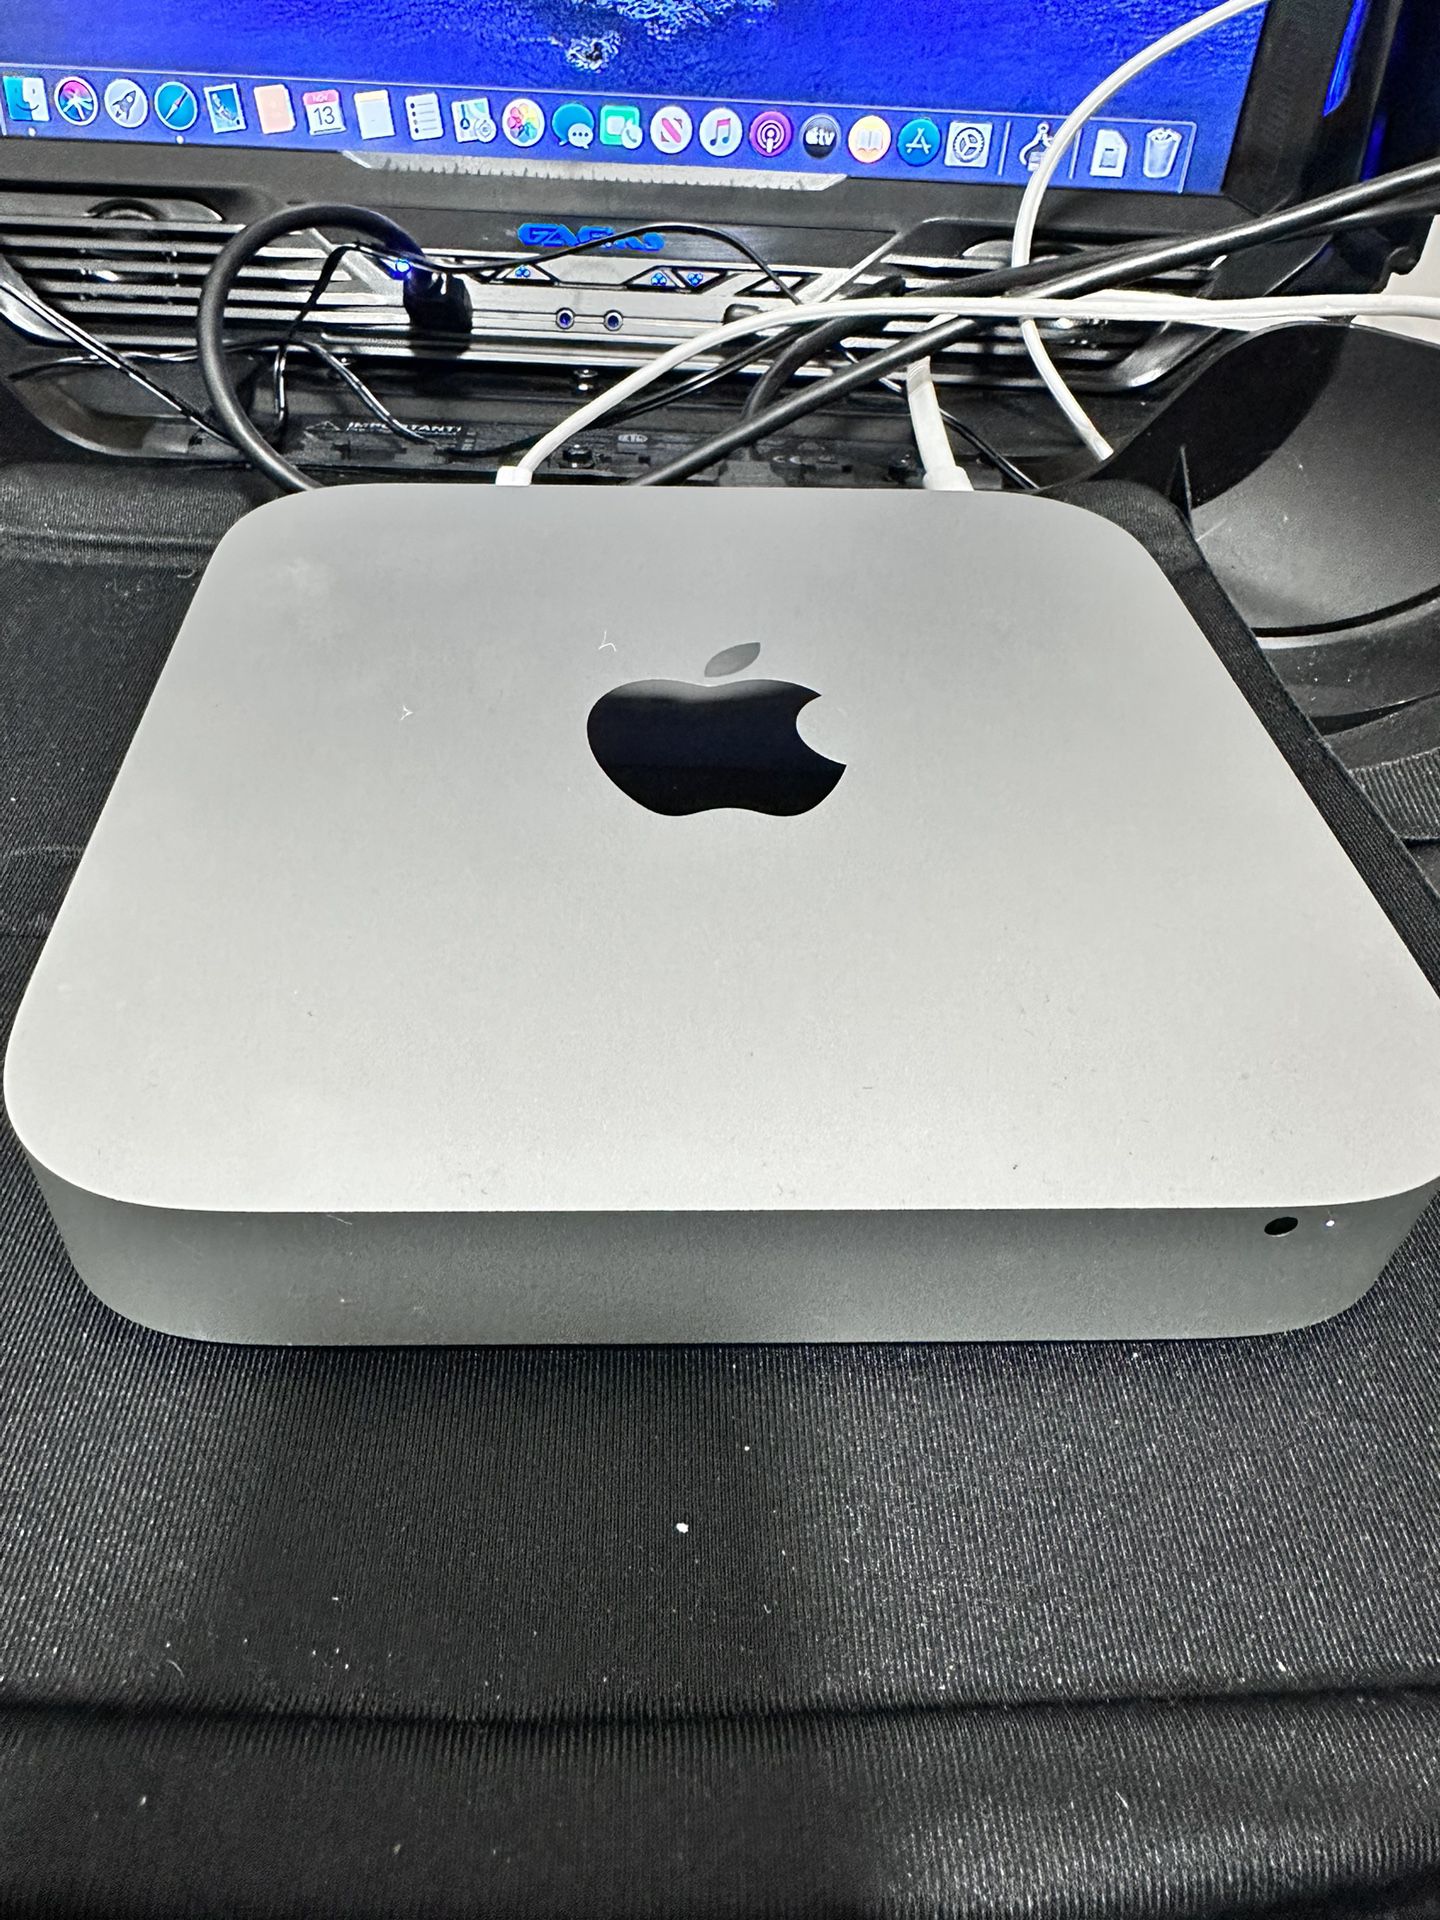 Late 2012 Mac Mini i7